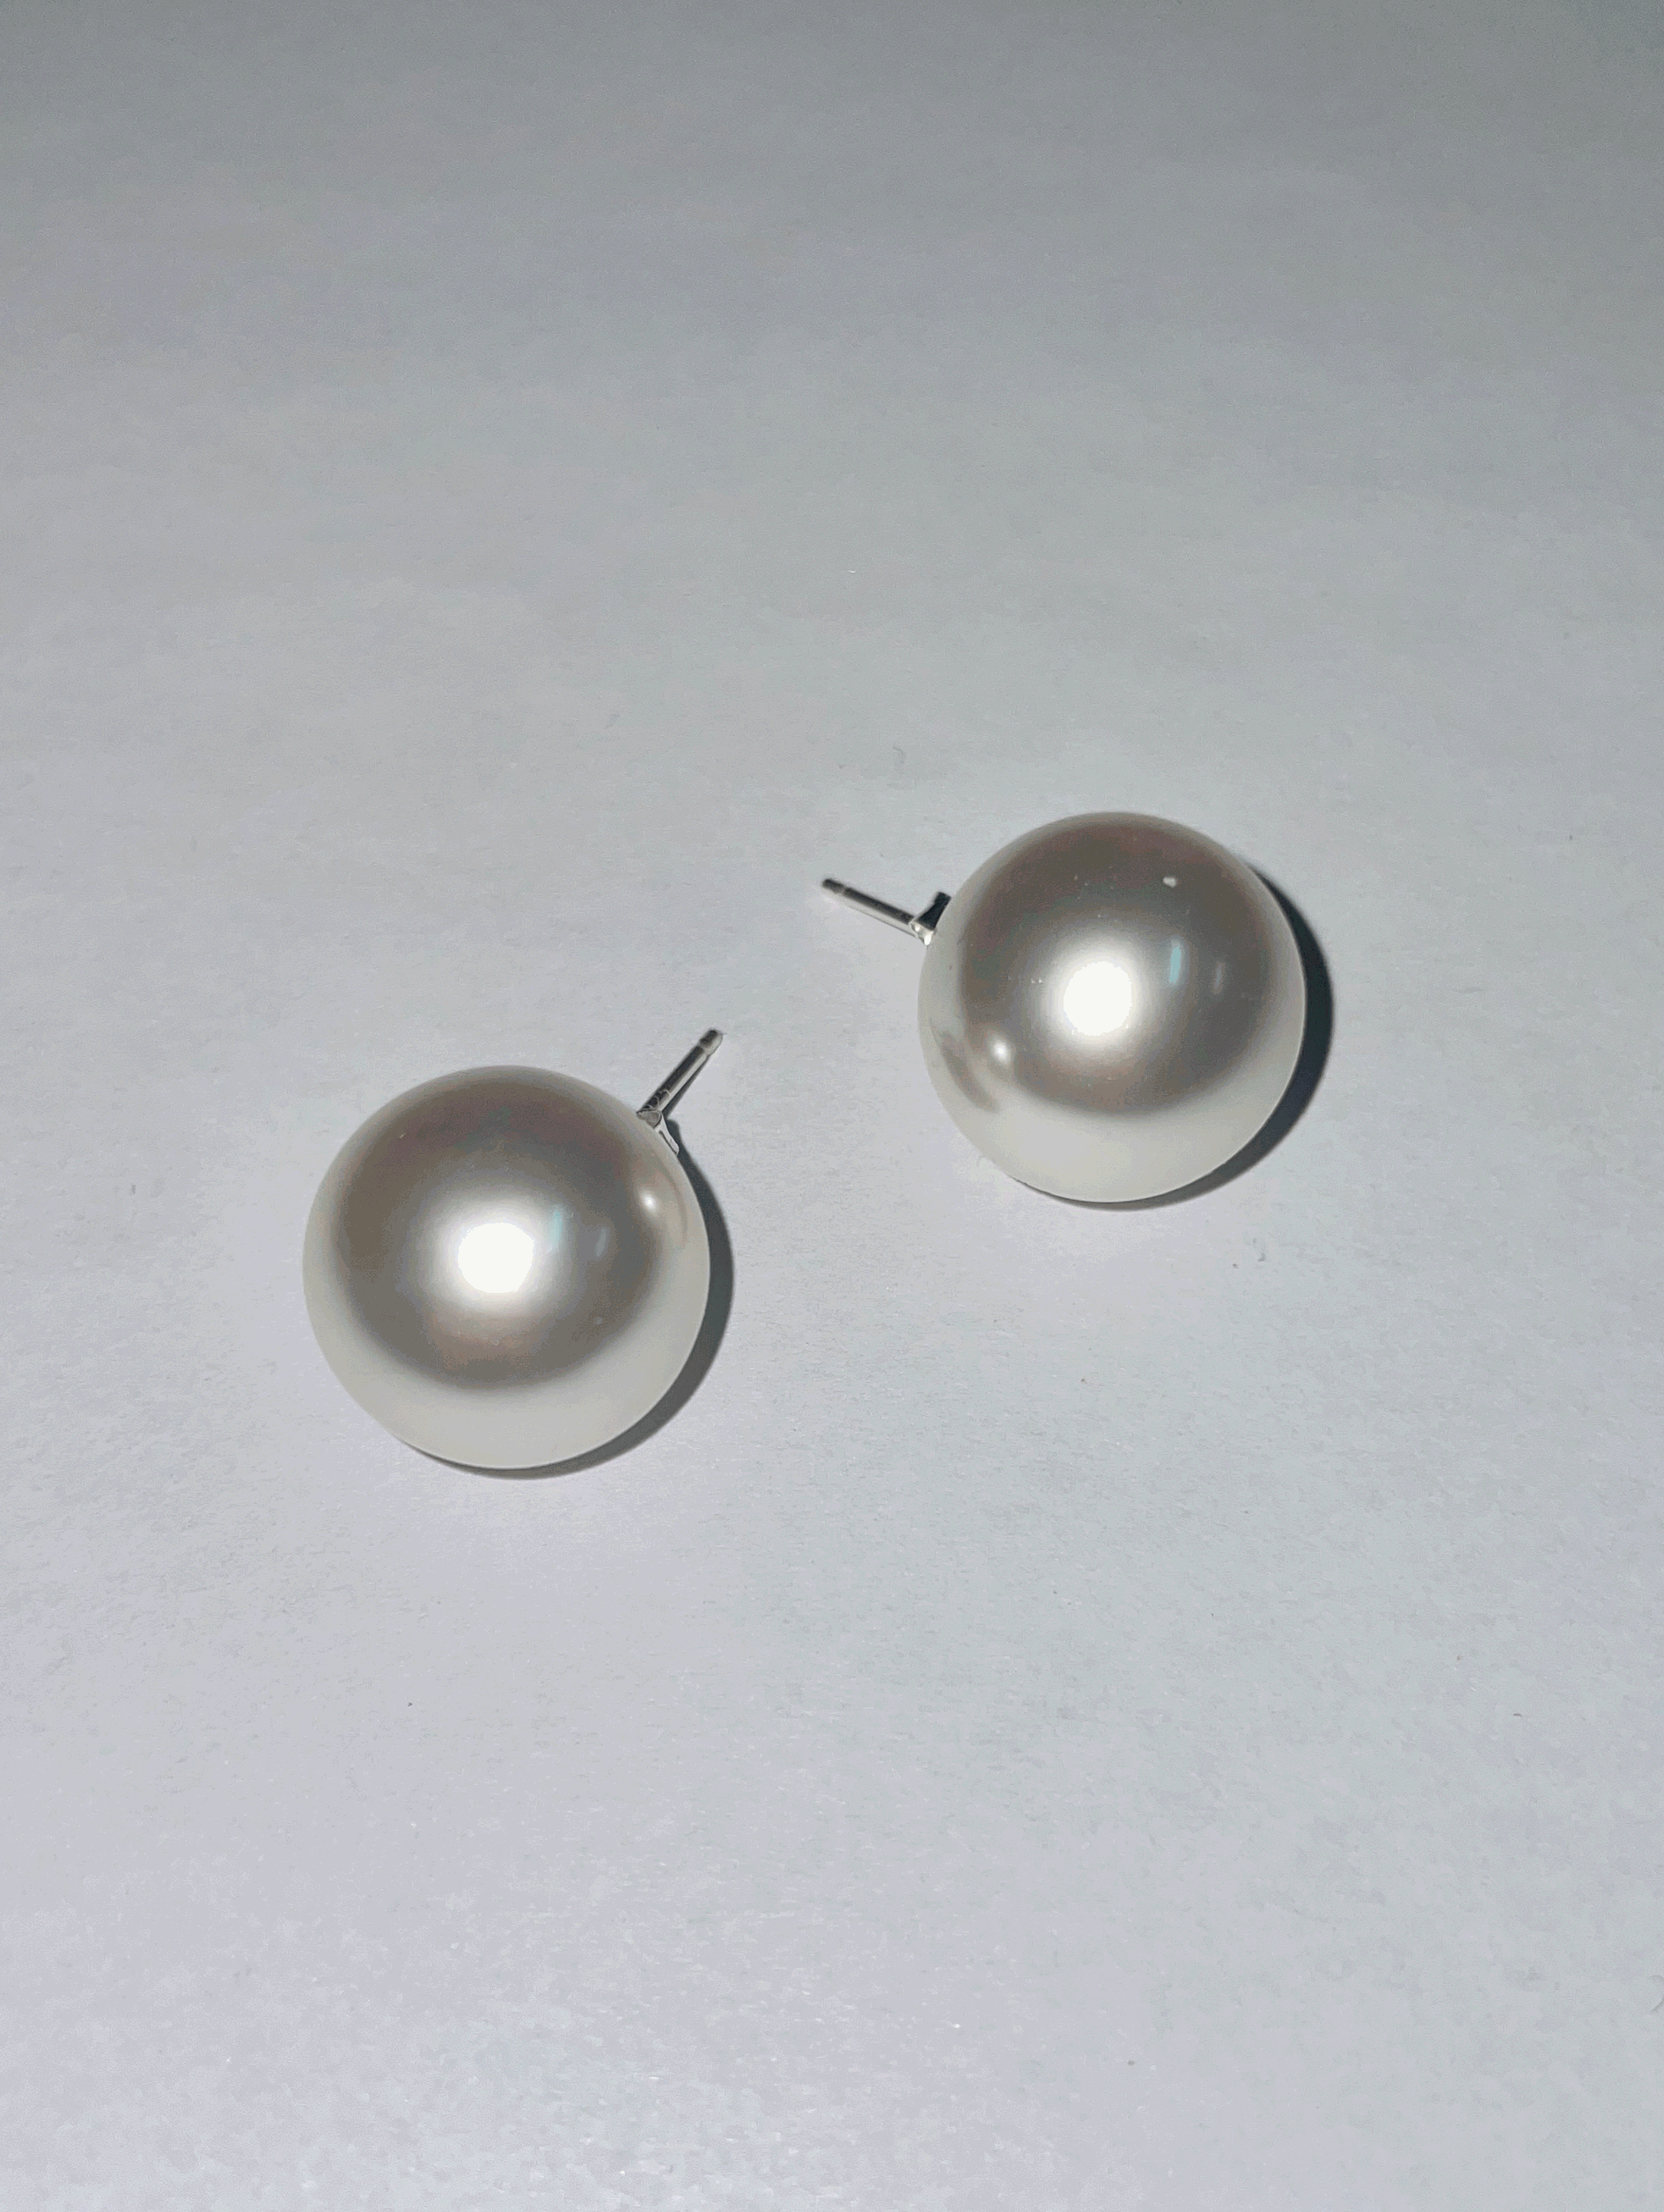 Big pearl earring (16mm)